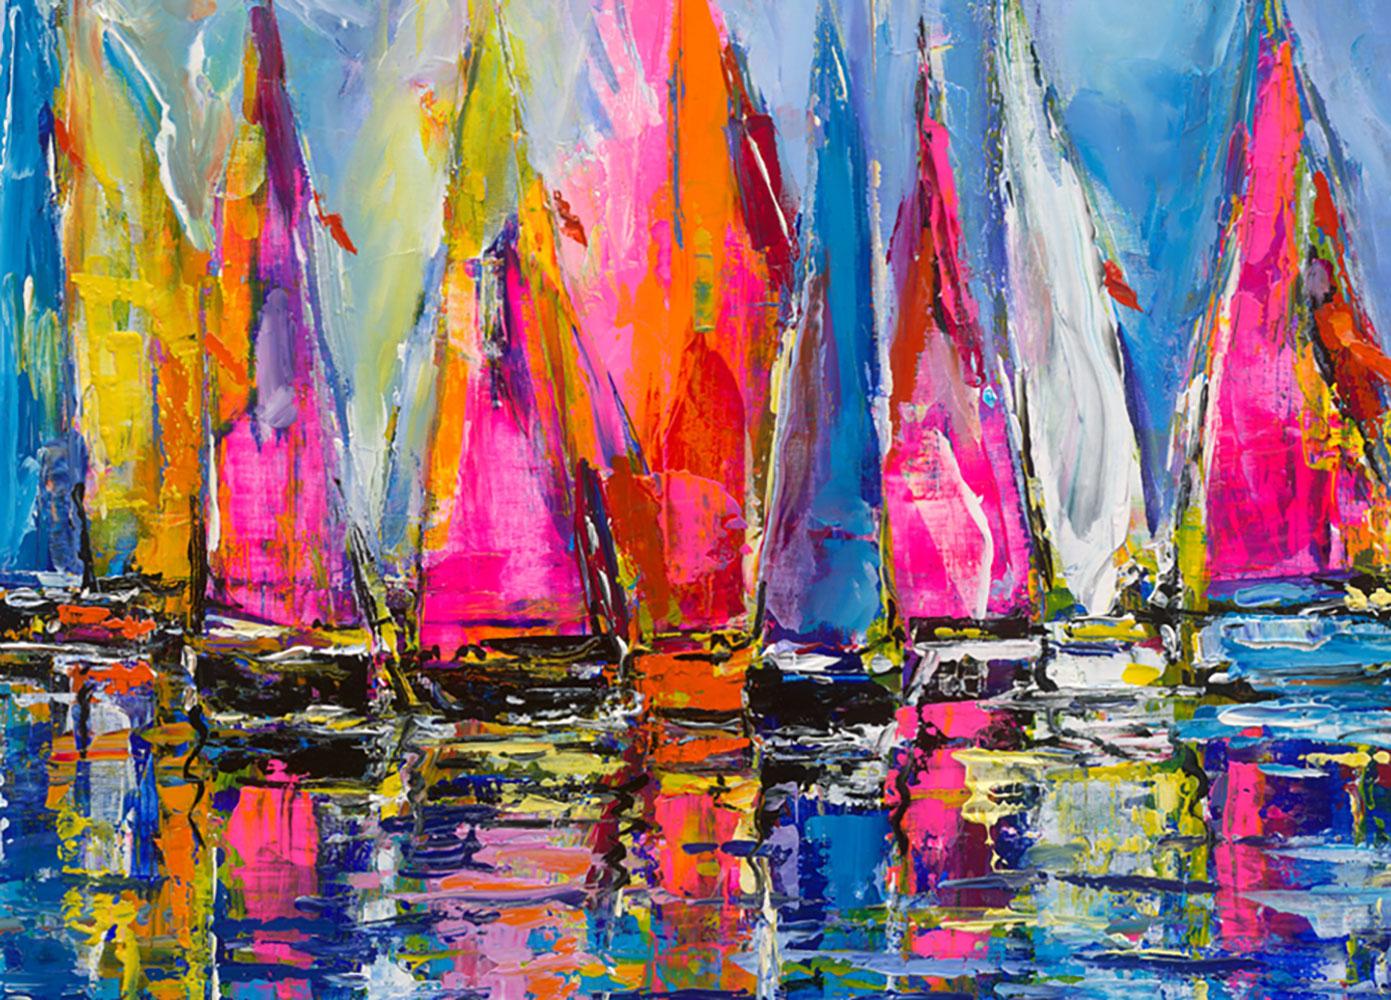 Duaiv * Sails of Colors * Original Oil On Linen 2